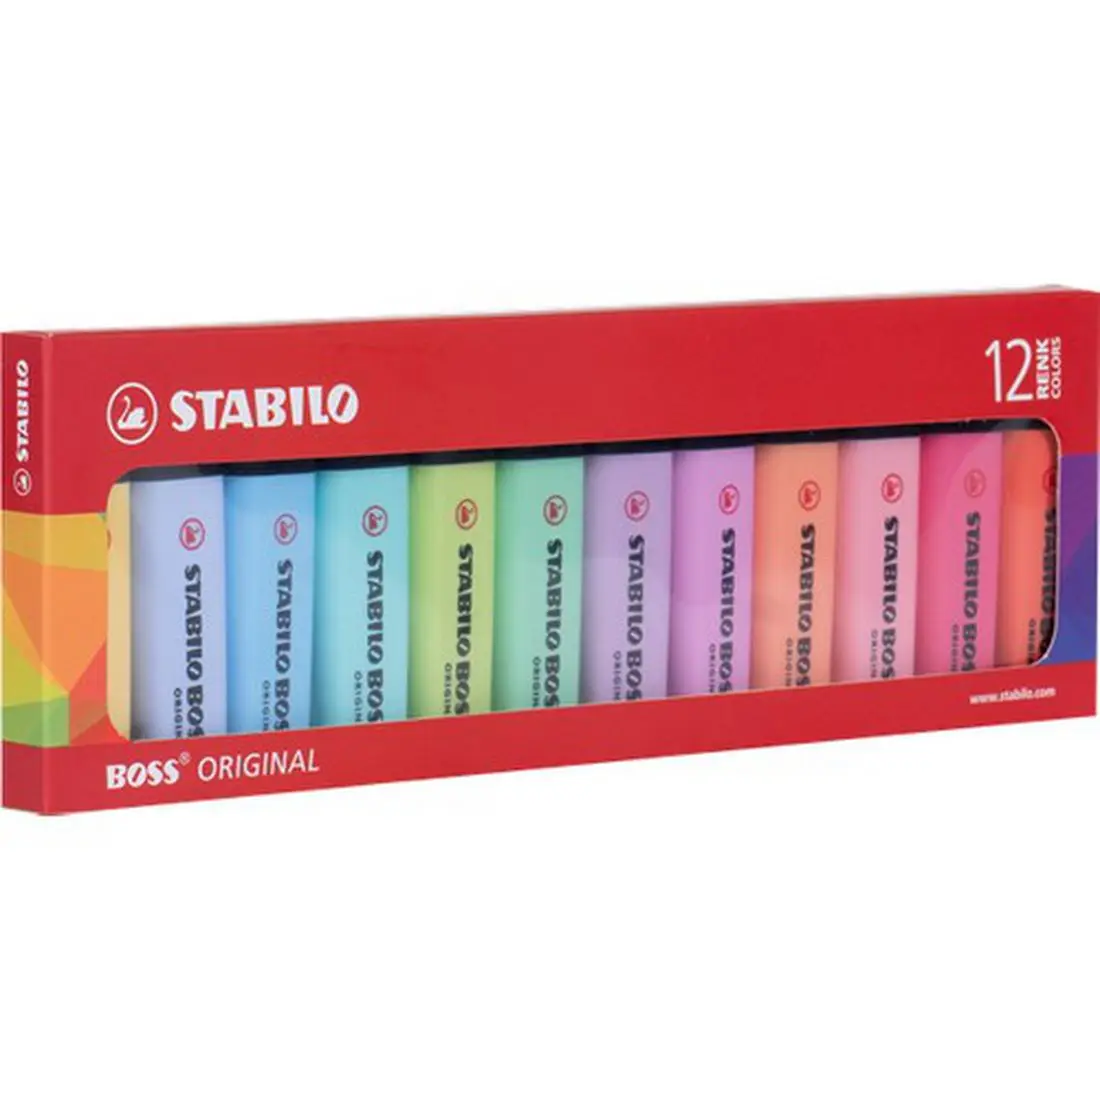 Устройство для подсветки Stabilo имеет 12 многоразовых чернил на водной основе, подходящих для использования на бумаге, копировальной бумаге и факсимильной бумаге. I